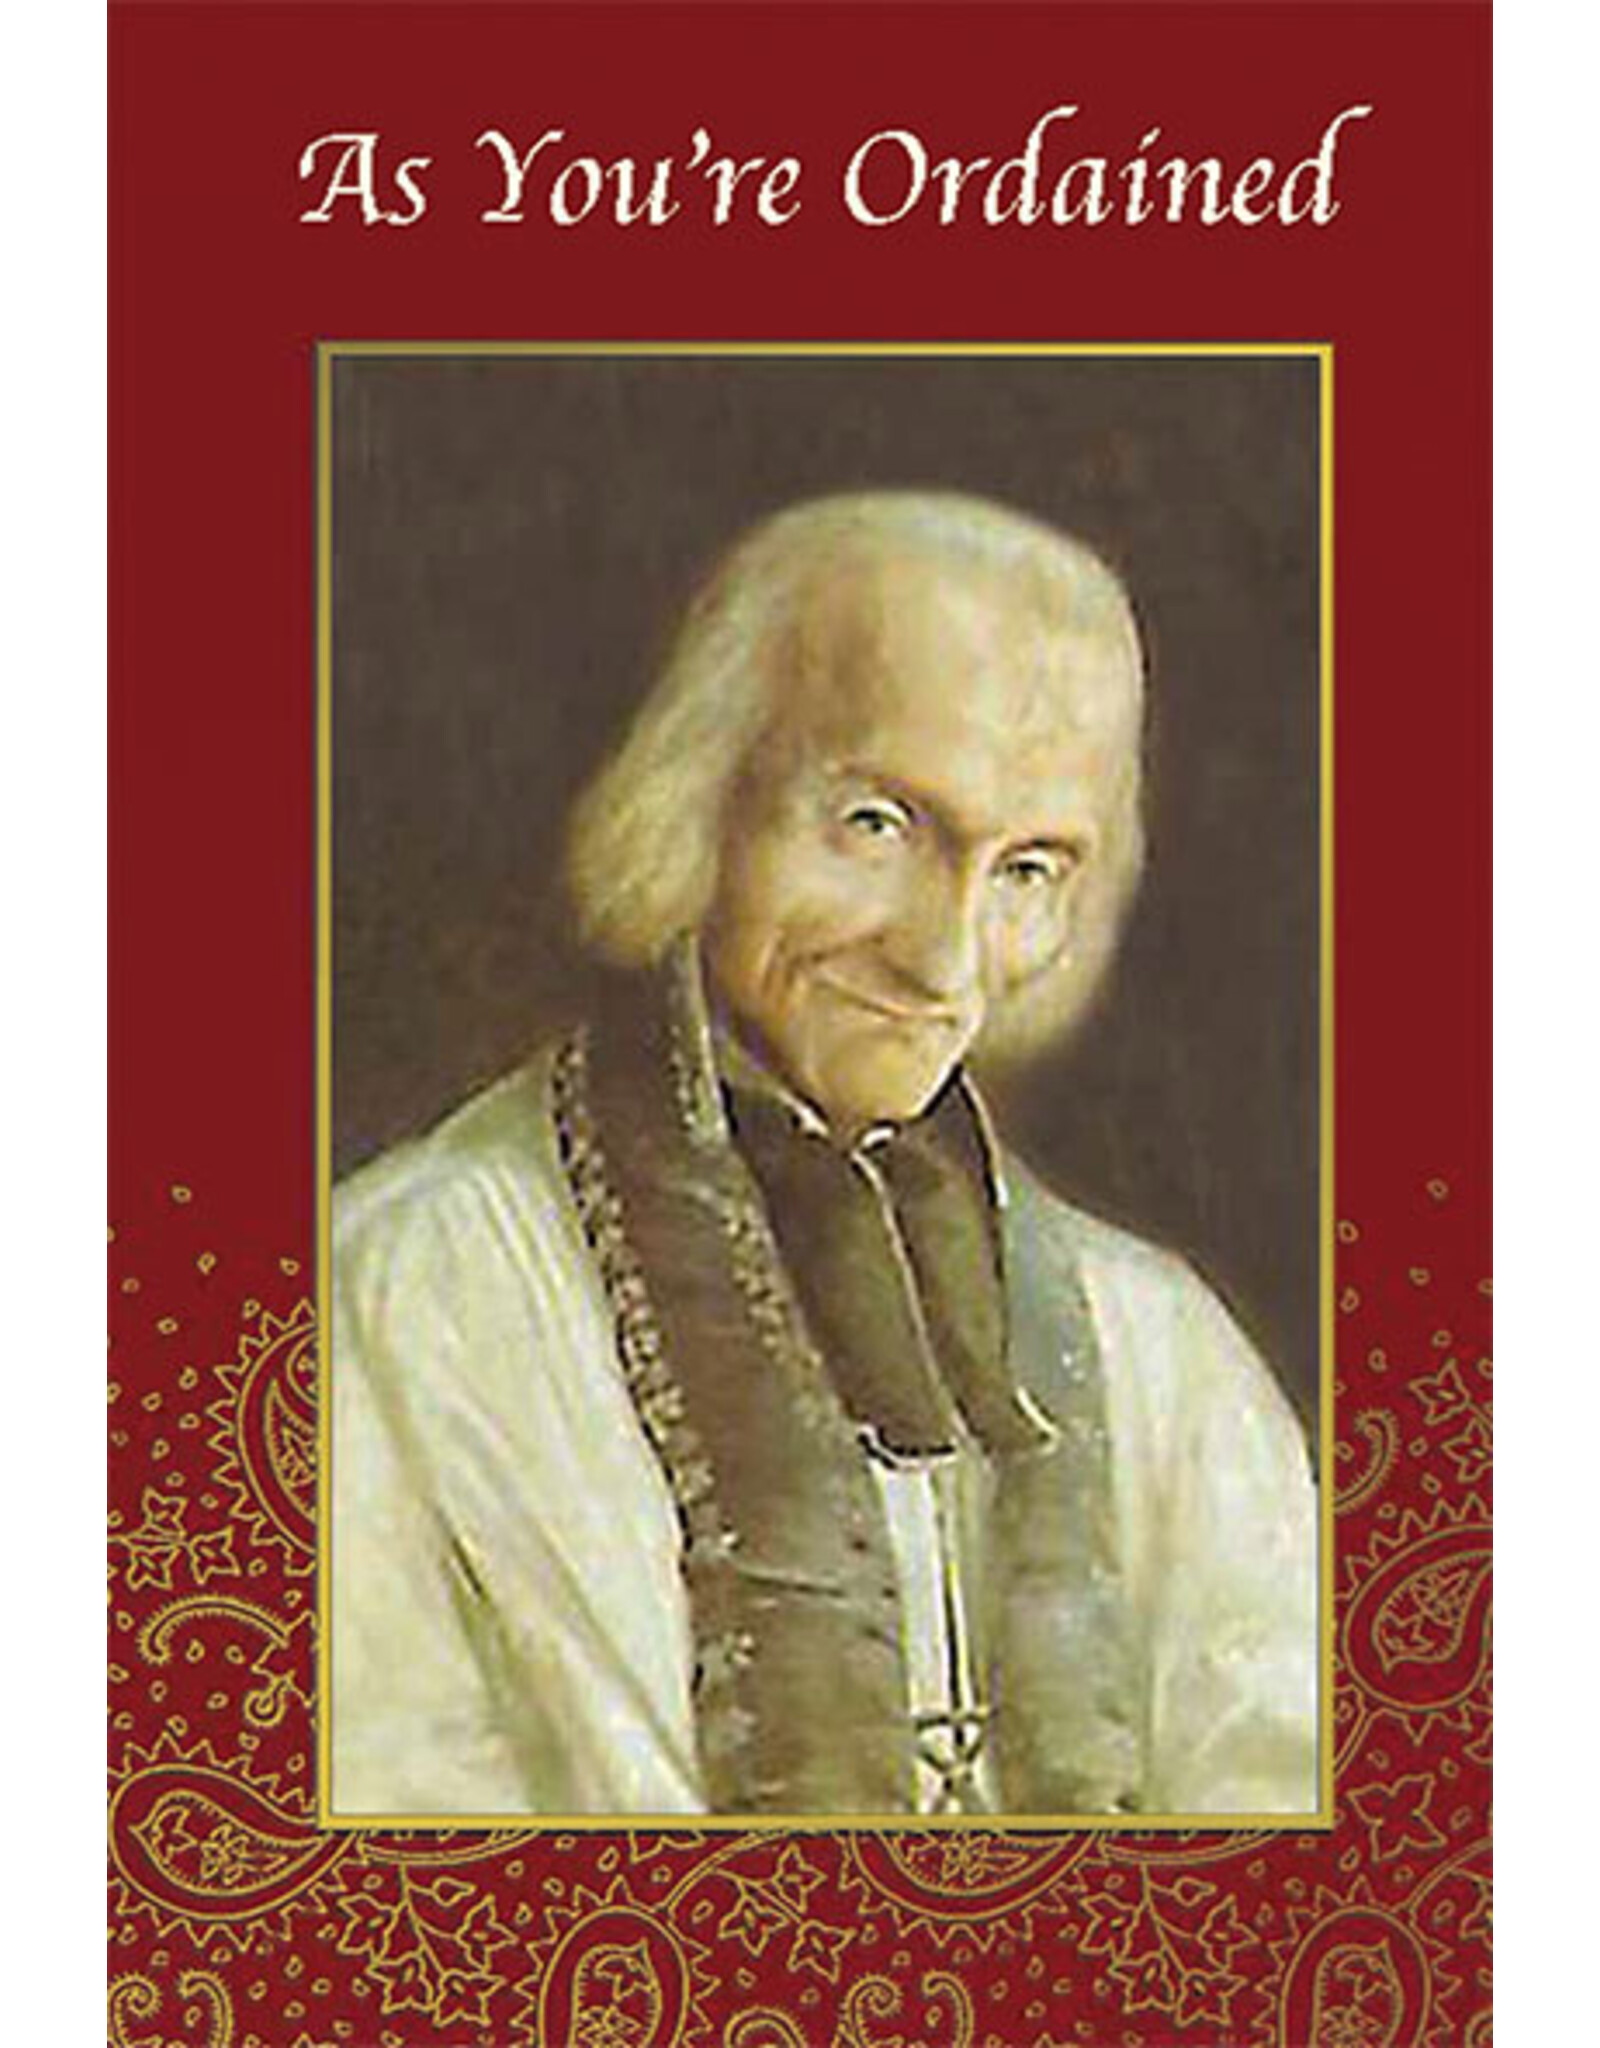 Greetings of Faith Ordination Card - St. John Vianney